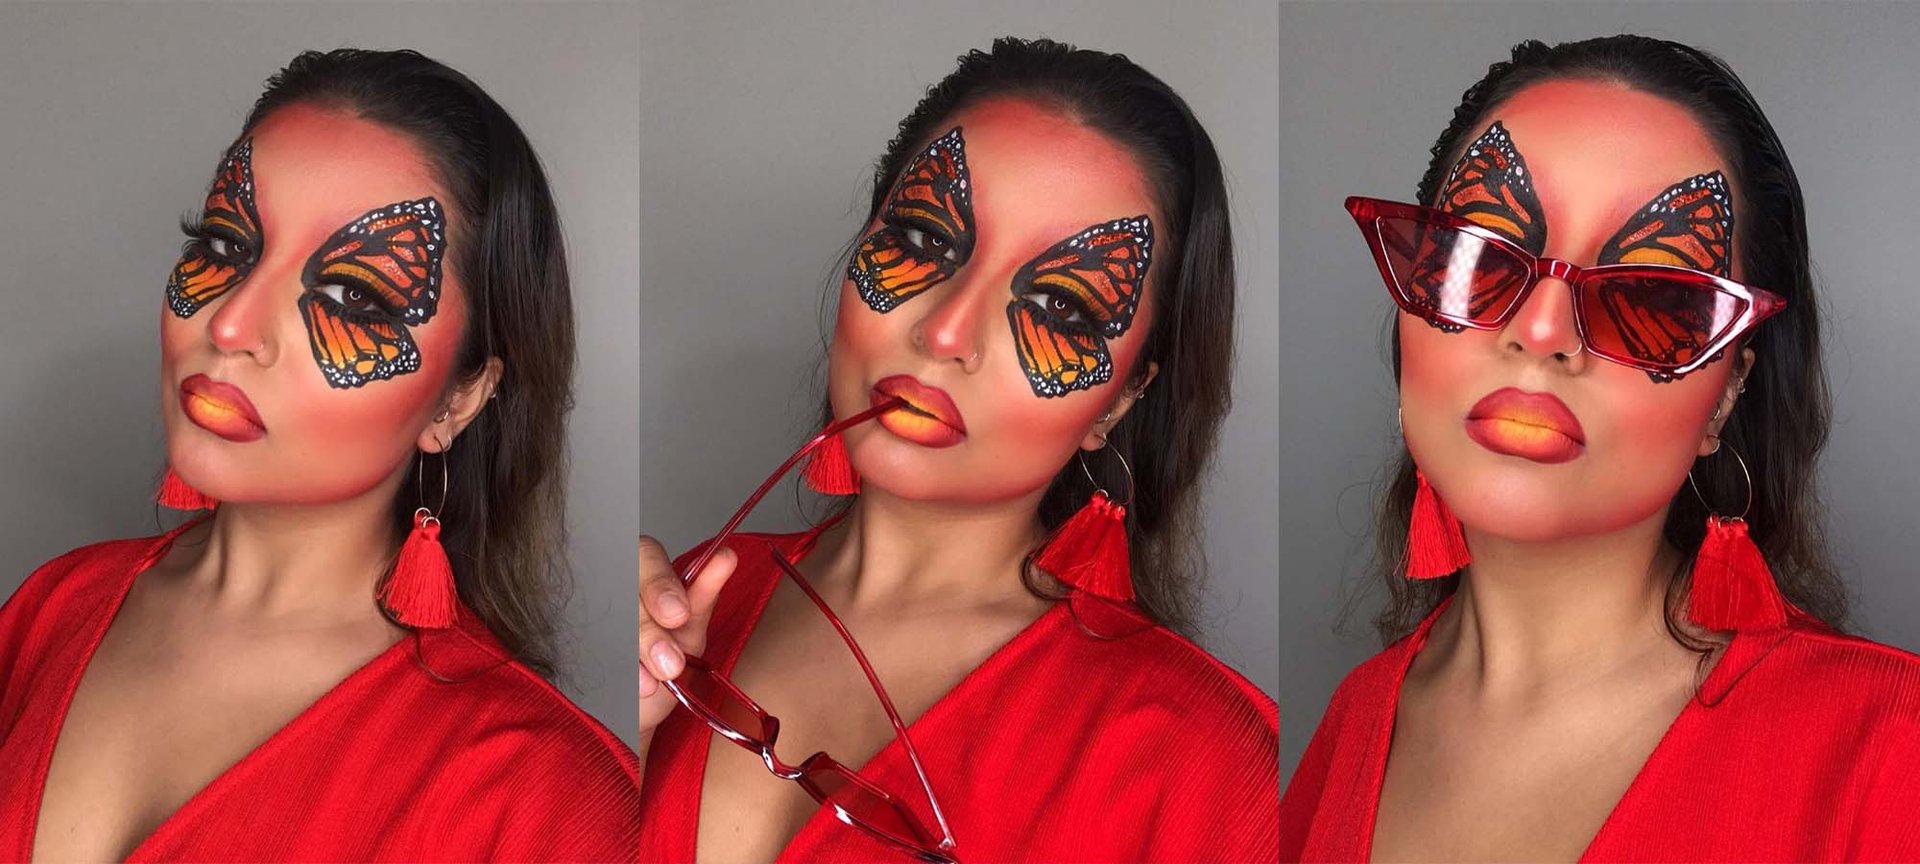 Halloween Makeup Ideas For Your Eyes - L'Oréal Paris